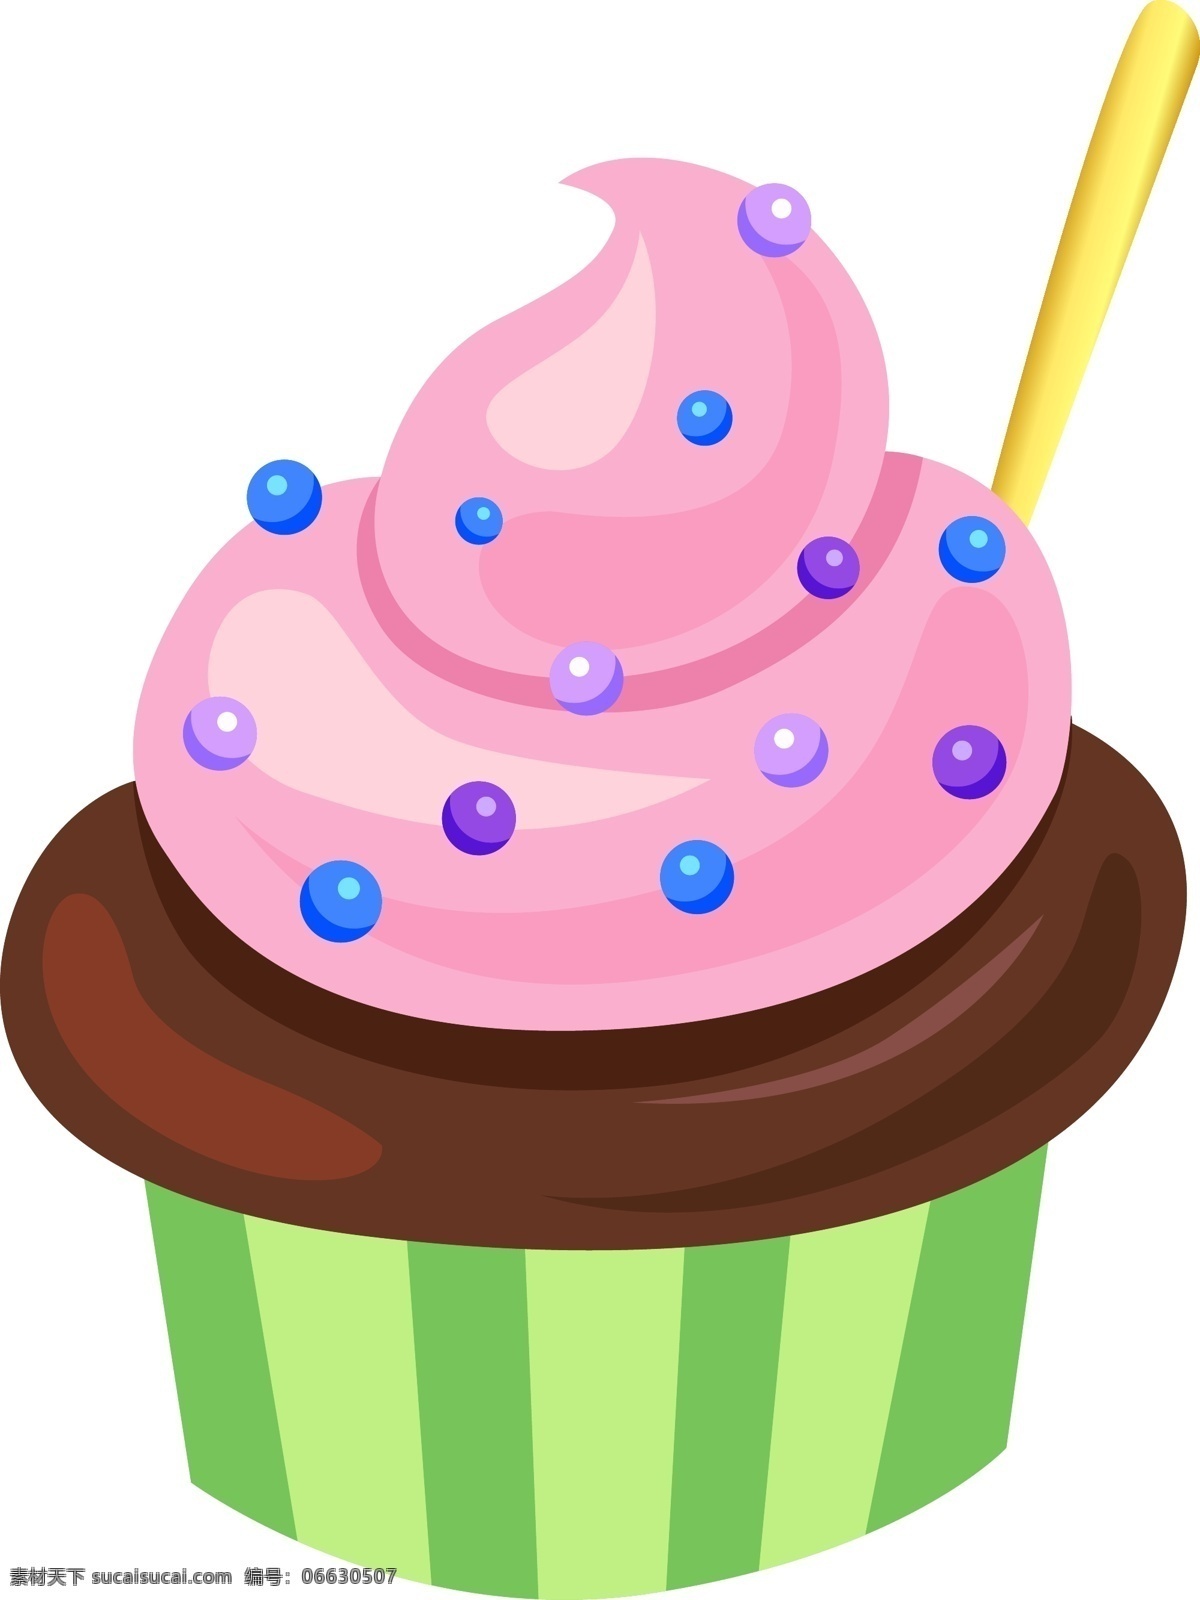 夏季 食物 卡通 手绘 樱桃 味 甜筒 冰淇淋 冰镇 冷饮 刨冰 圣代 夏天 美食 蛋筒 螺旋 雪糕